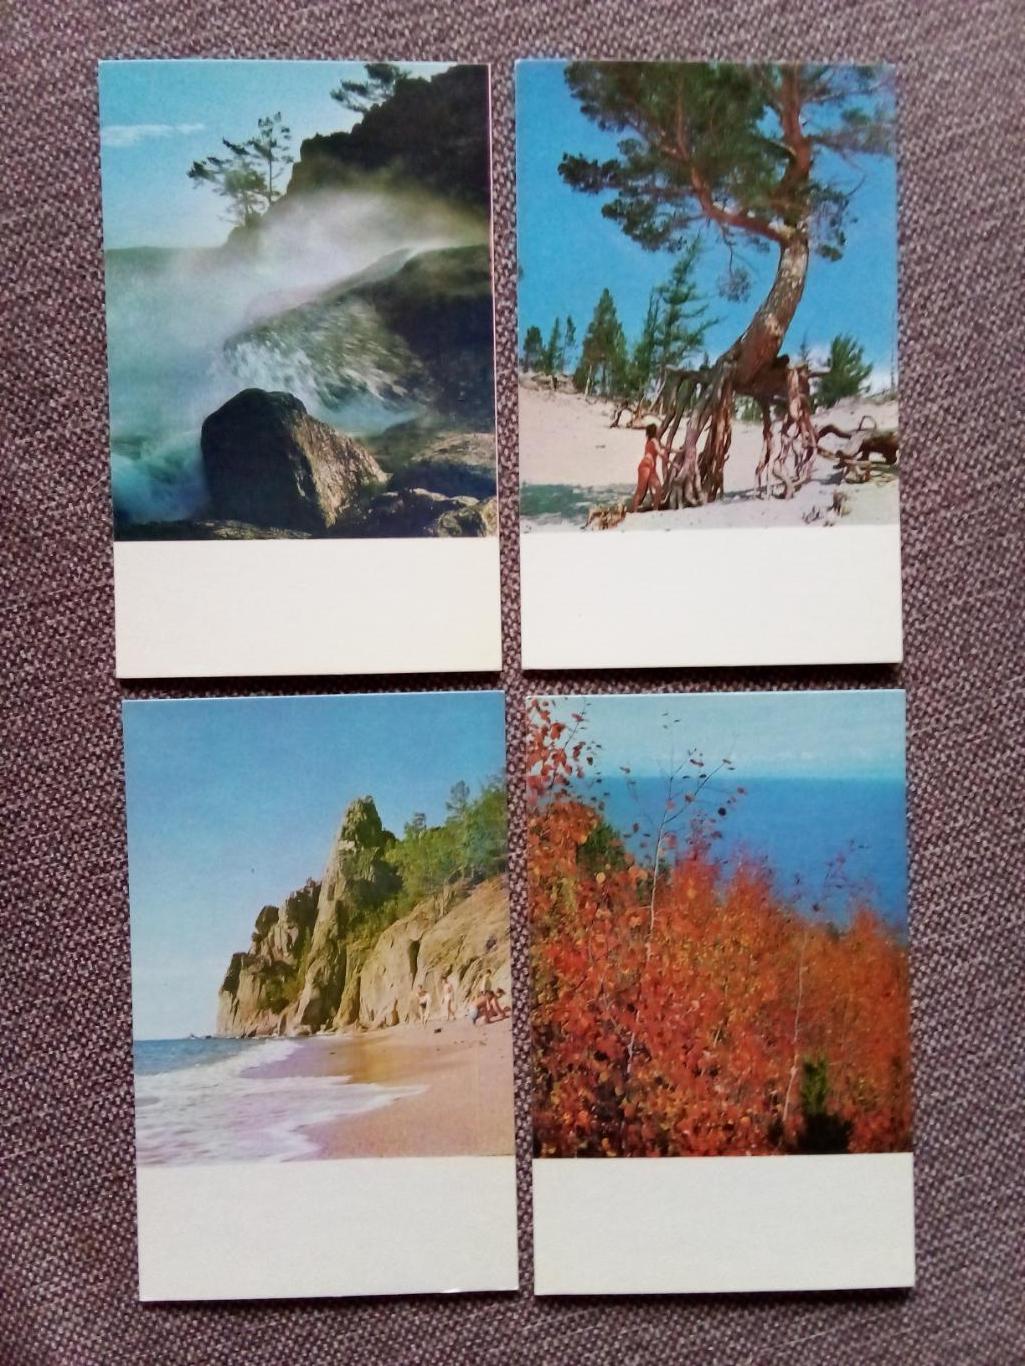 Памятные места СССР : Озеро Байкал 1971 г. полный набор - 15 открыток (чистые) 2